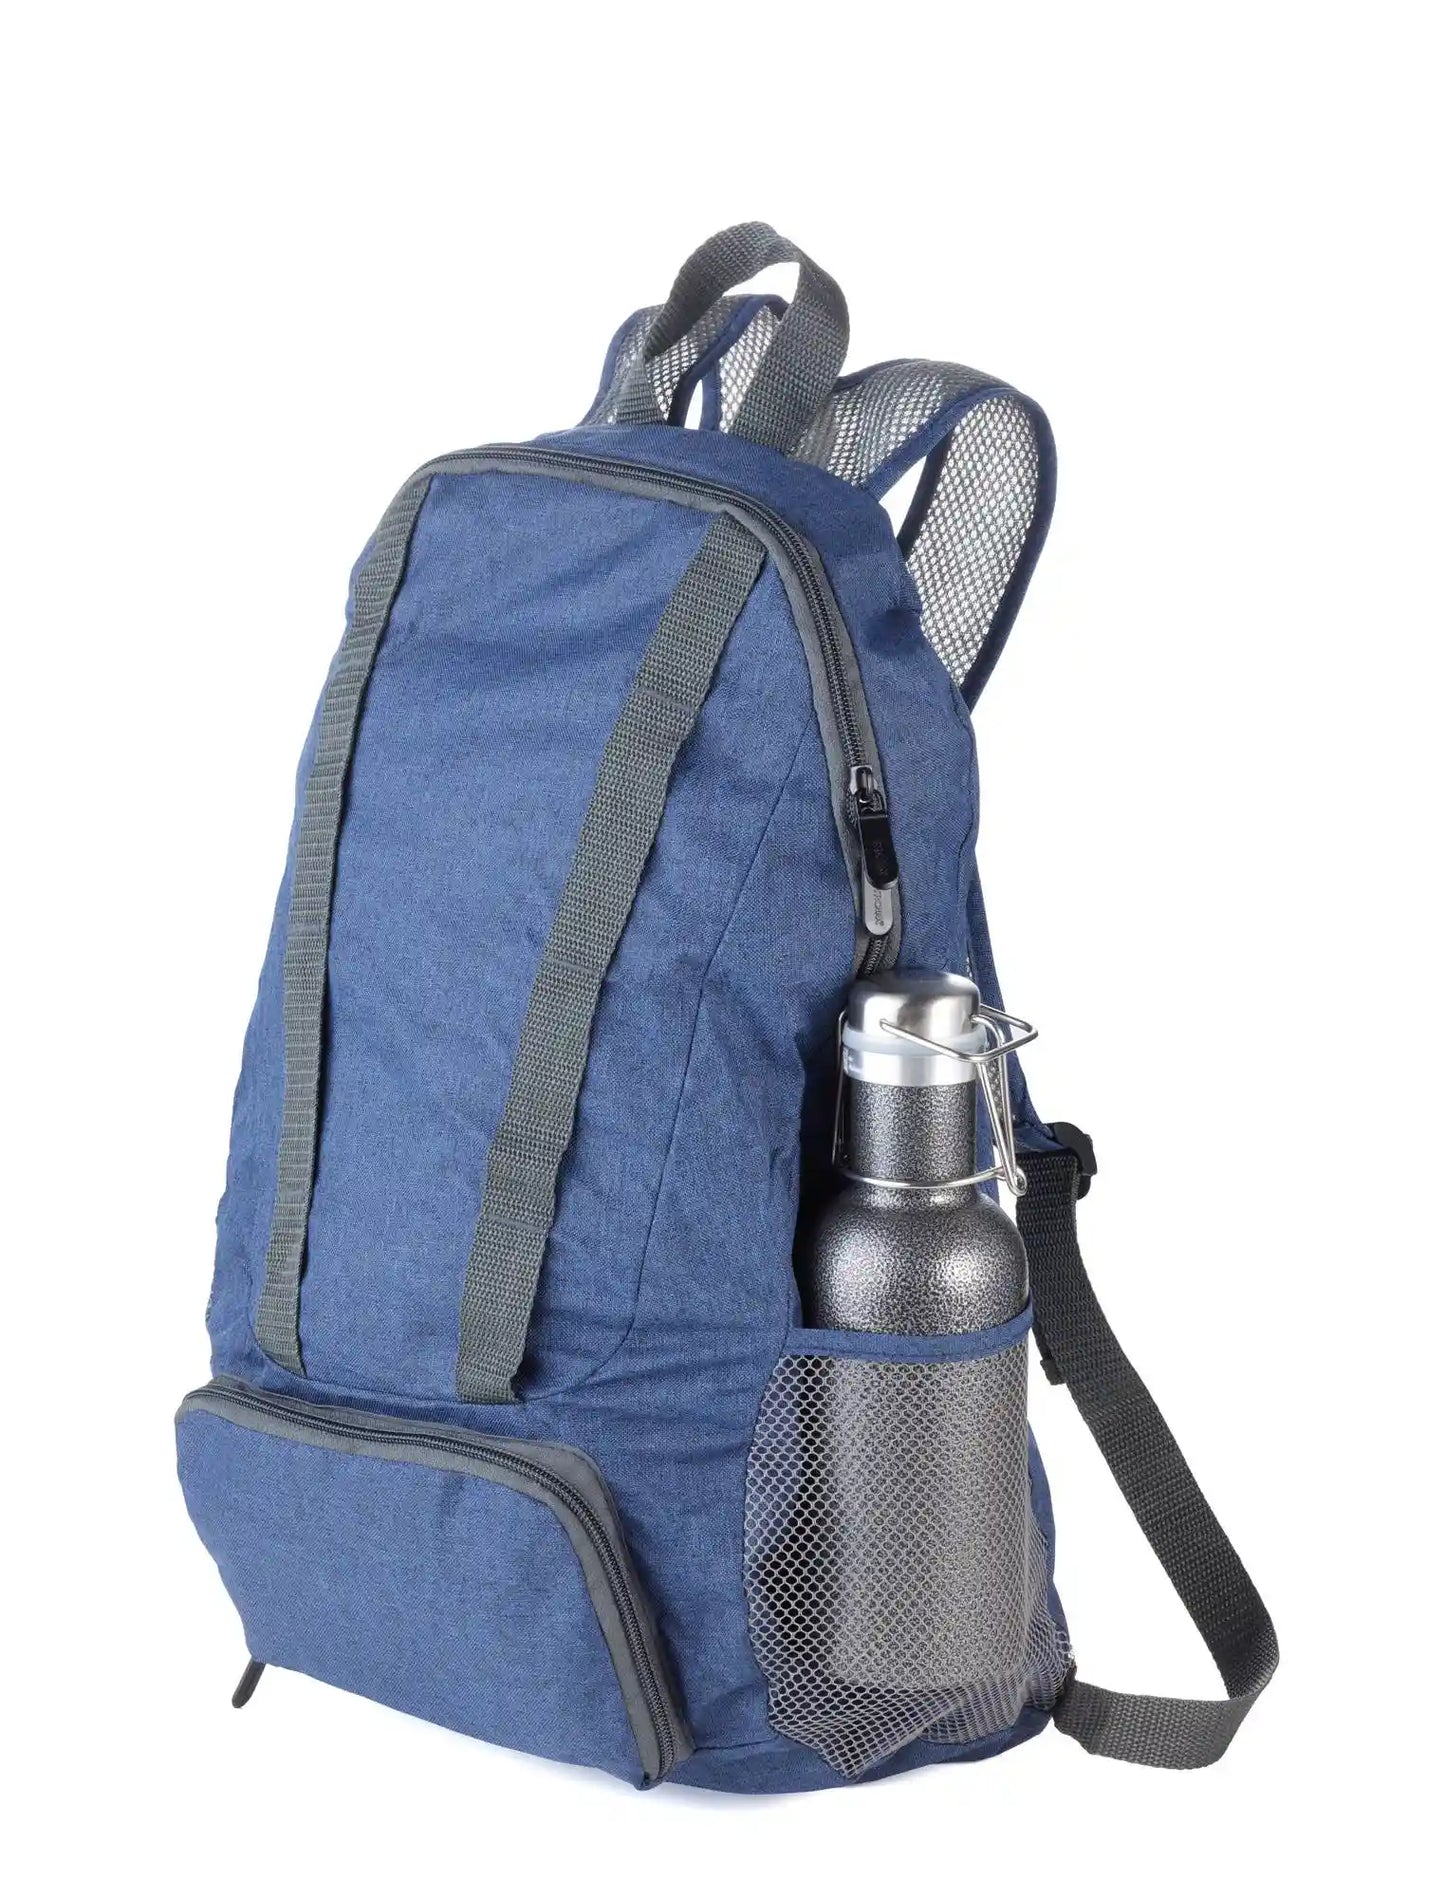 Sammenleggbar ryggsekk i blå farge og kapasitet på 12 liter med en vannflaske